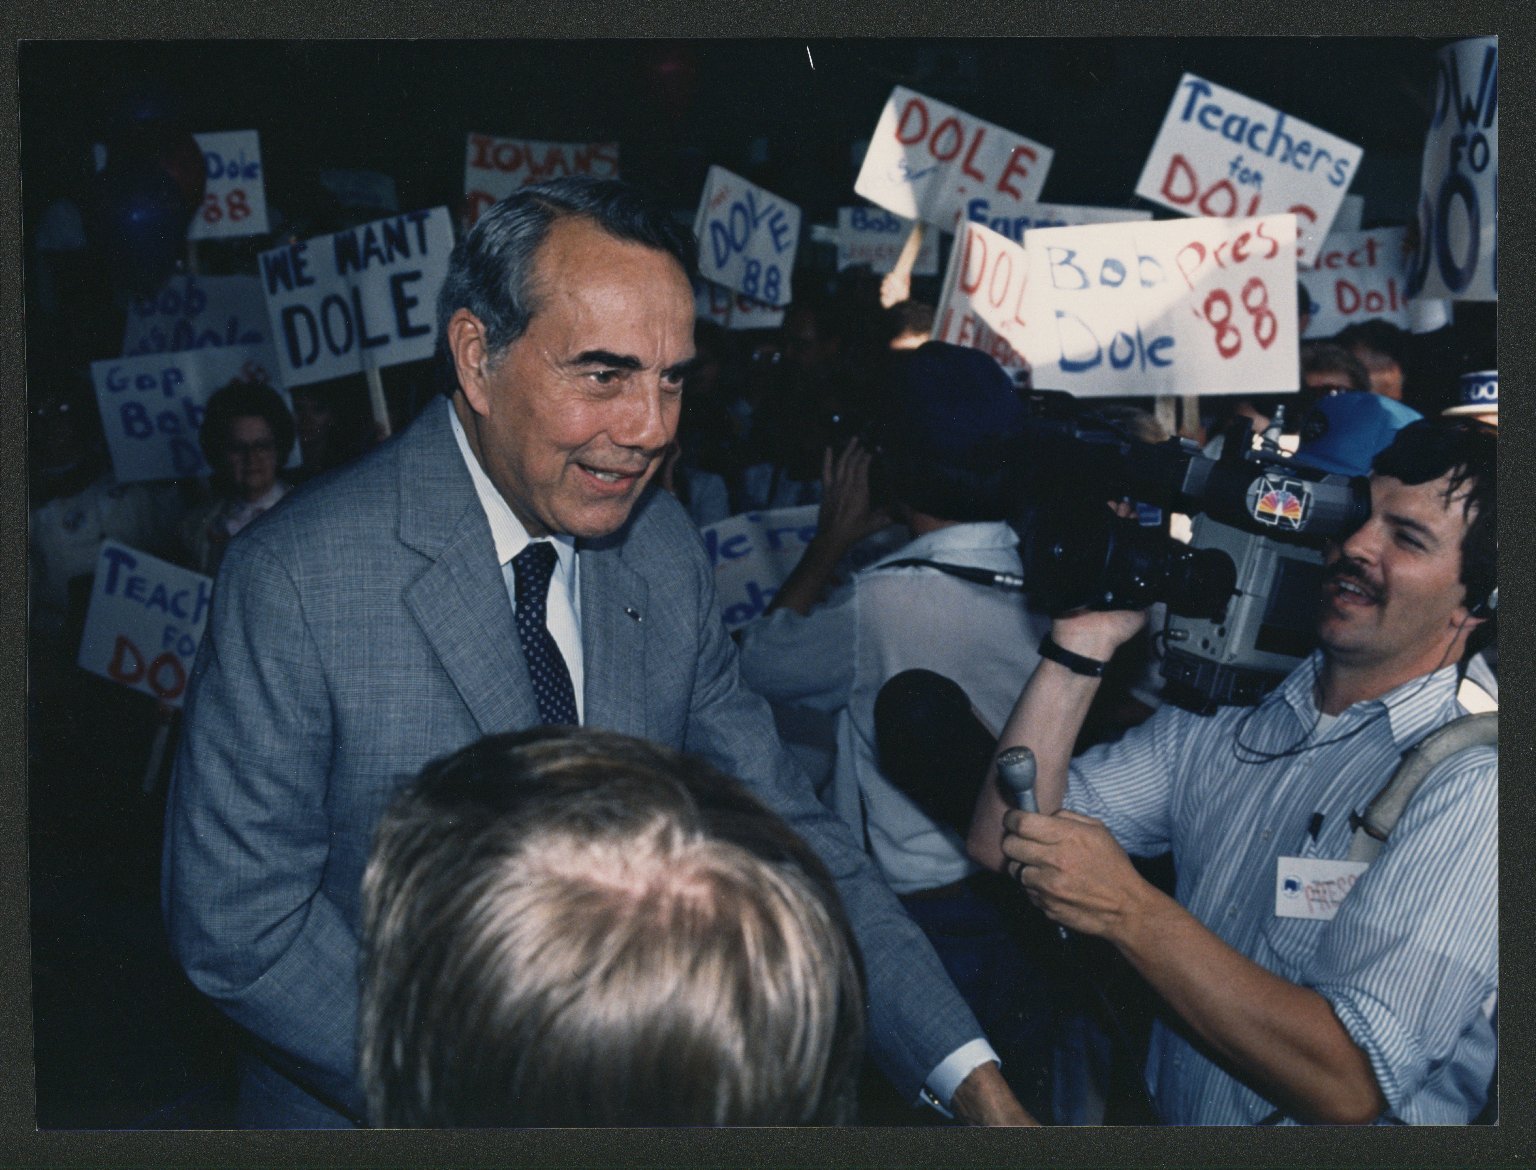 Senator. Bob Dole campaigning in Iowa, c. 1988